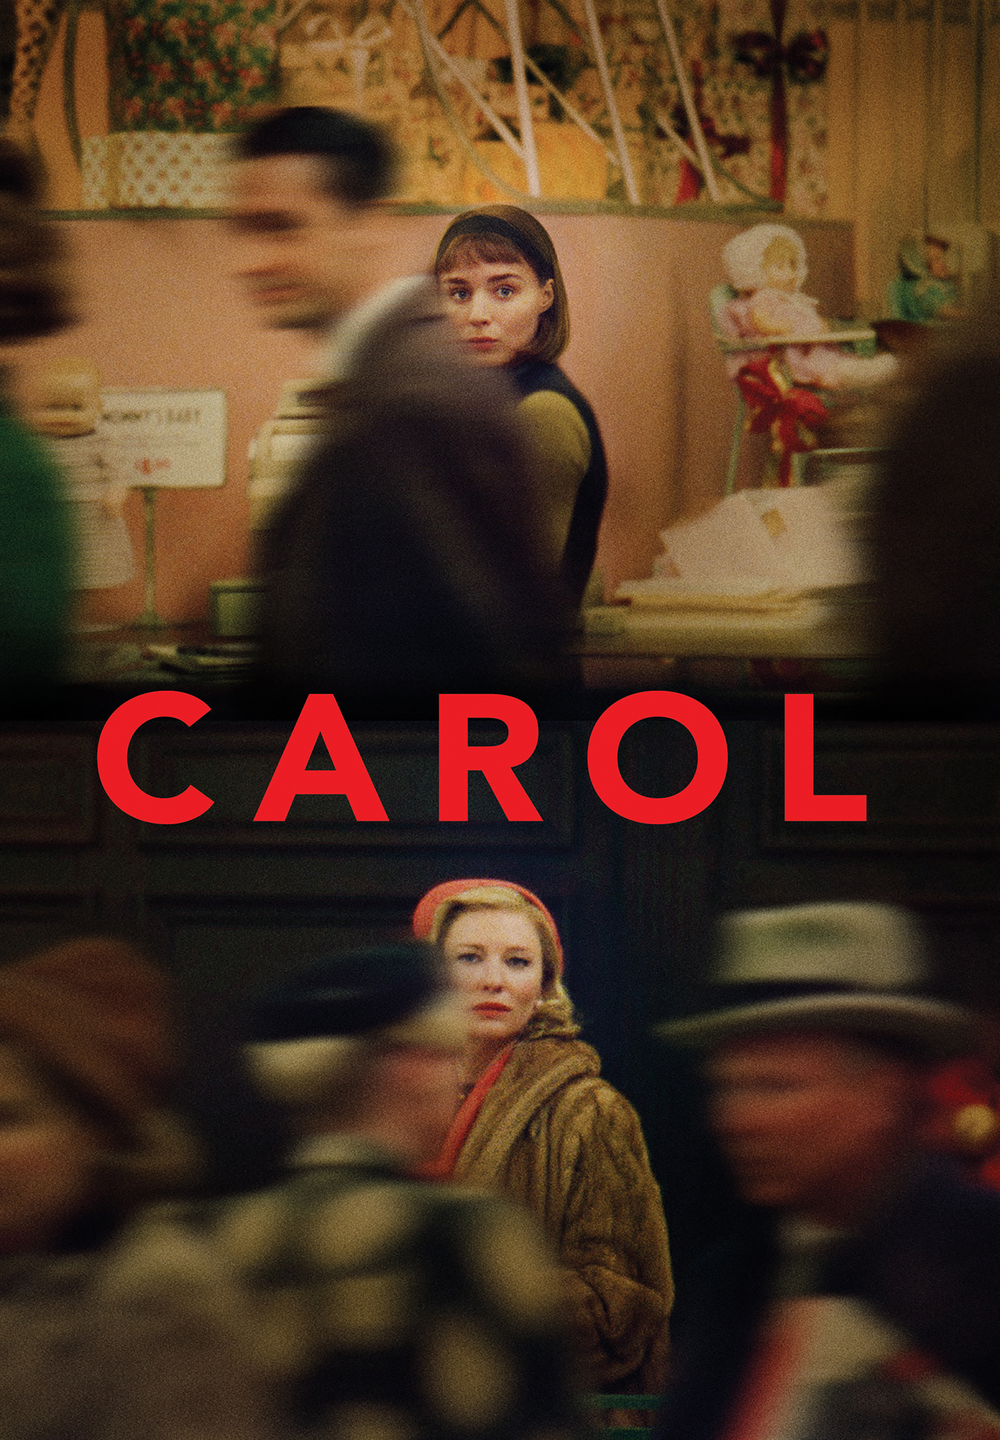 Carol [HD] (2016)